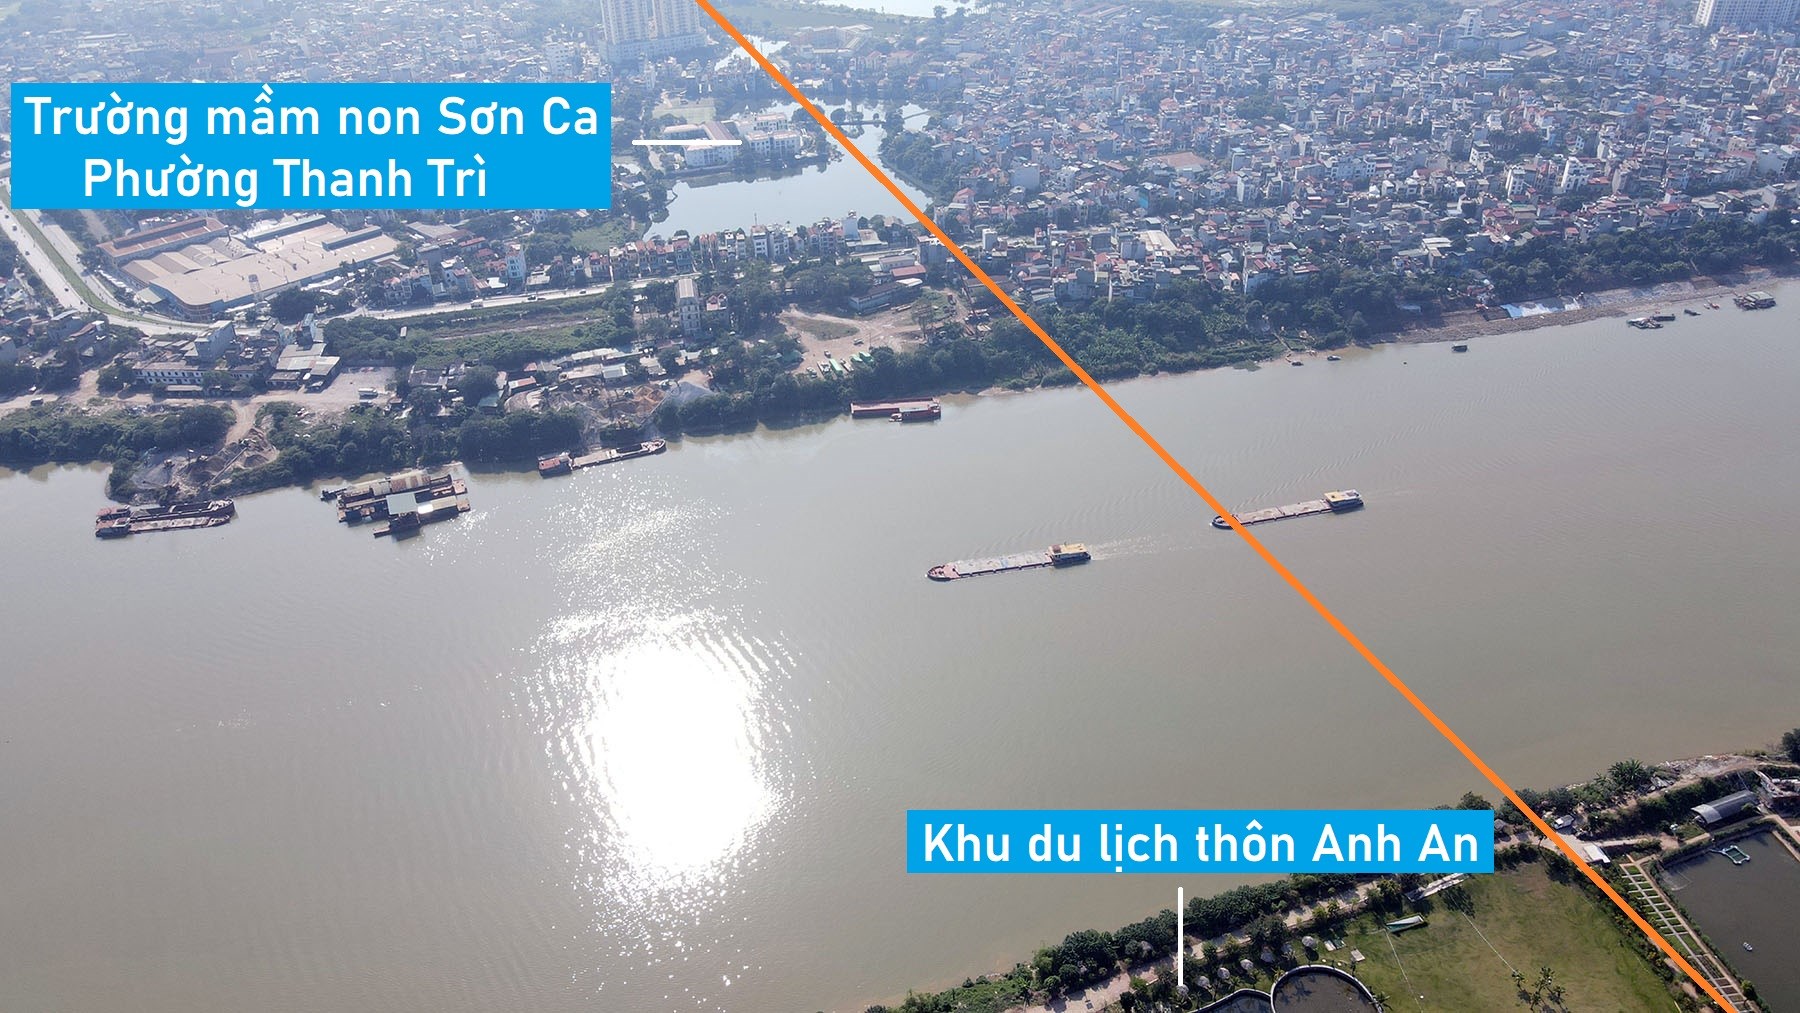 Toàn cảnh vị trí quy hoạch xây cầu đường sắt vượt sông Hồng nối Hoàng Mai - Long Biên, Hà Nội